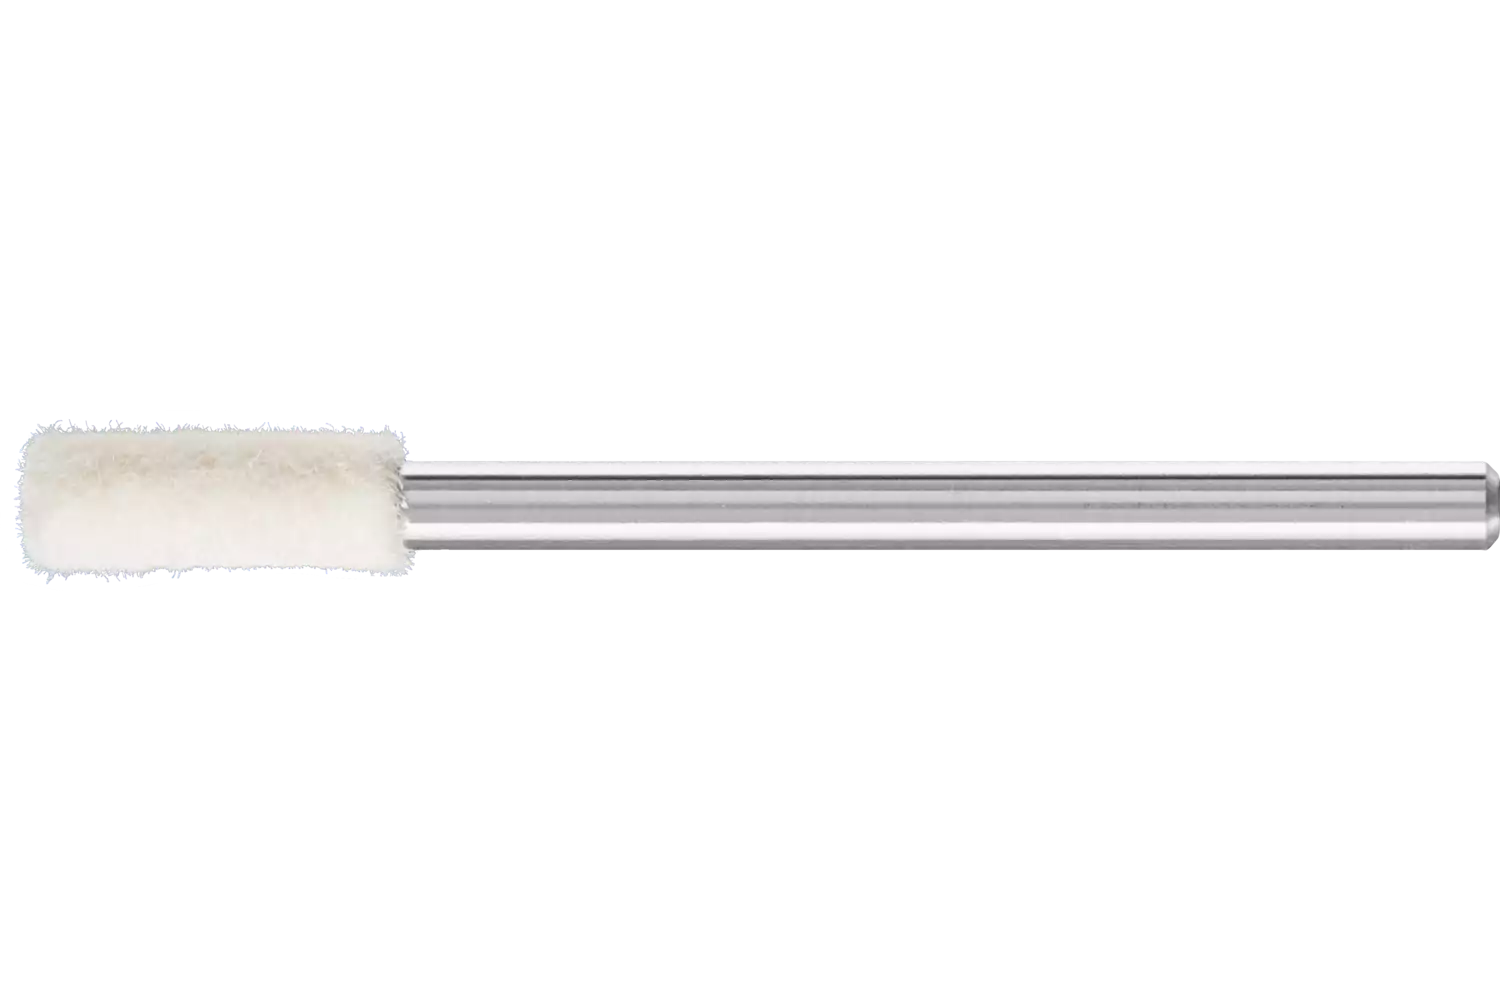 Feltri con gambo per lucidare medio-duri forma cilindrica Ø 4x12 mm, gambo Ø 3 mm 1